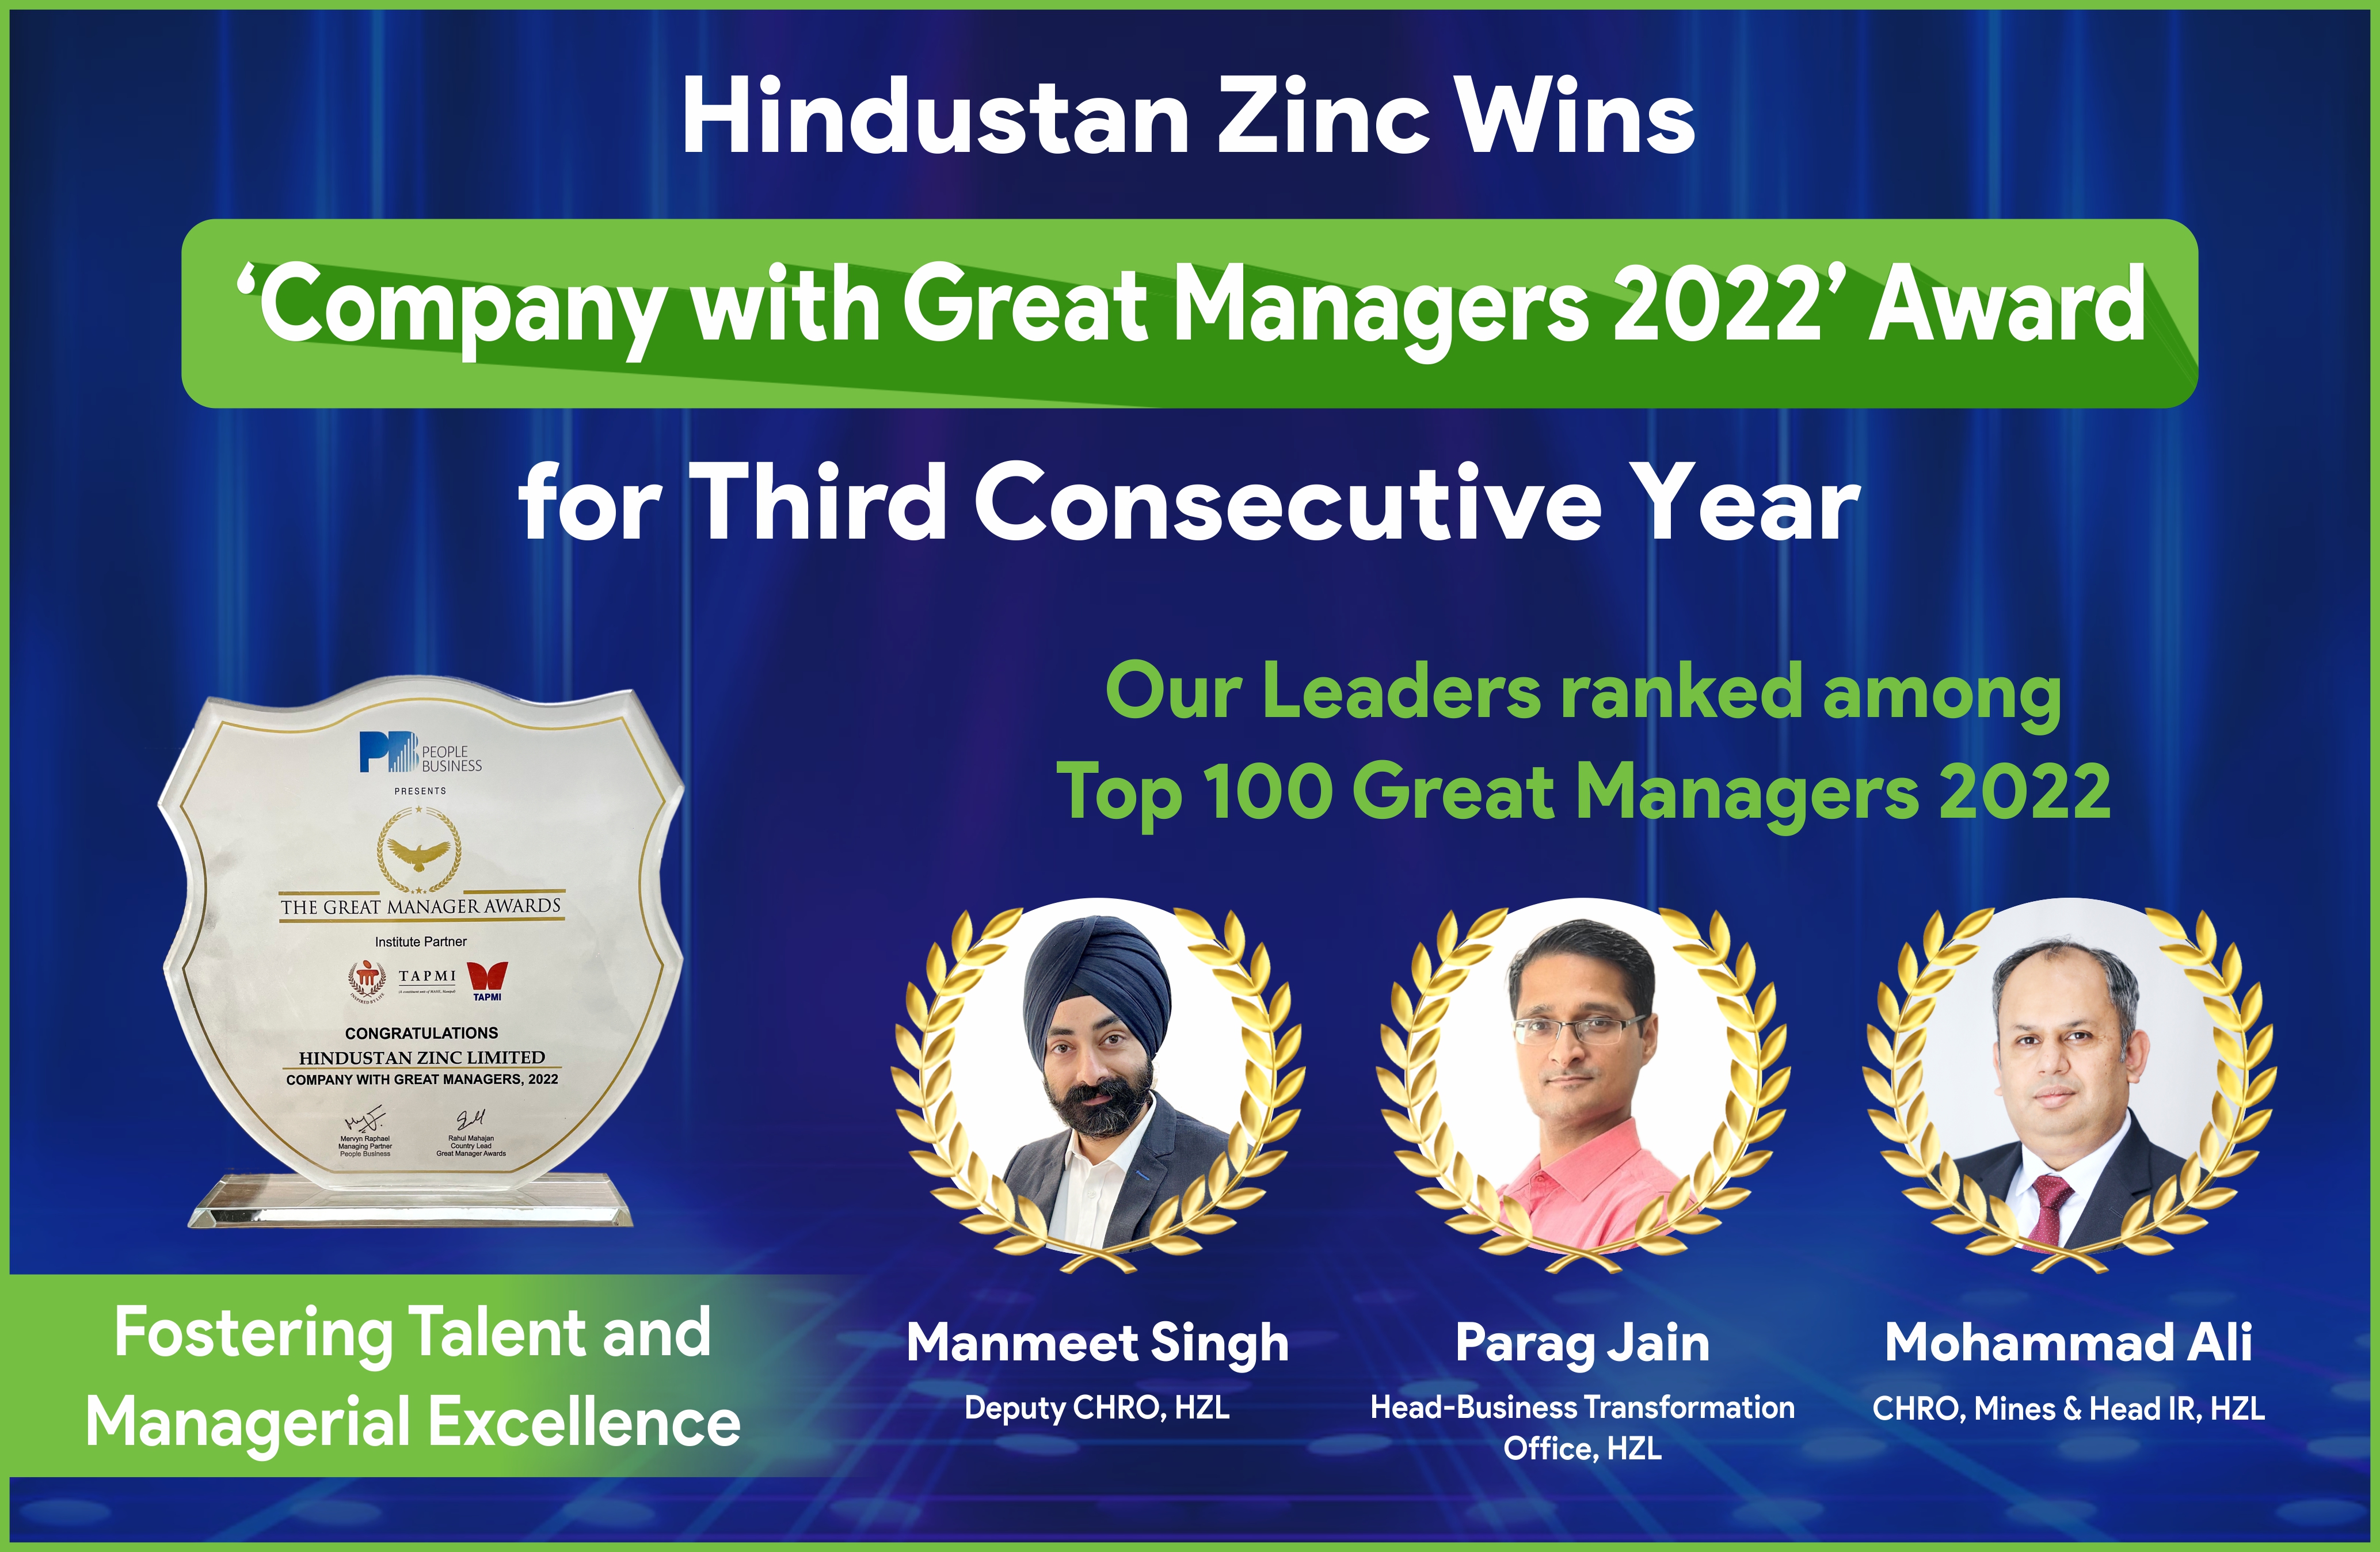 हिंदुस्तान जिंक लगातार तीसरी बार कंपनी विद ग्रेट मैनेजर्स से पुरस्कृत